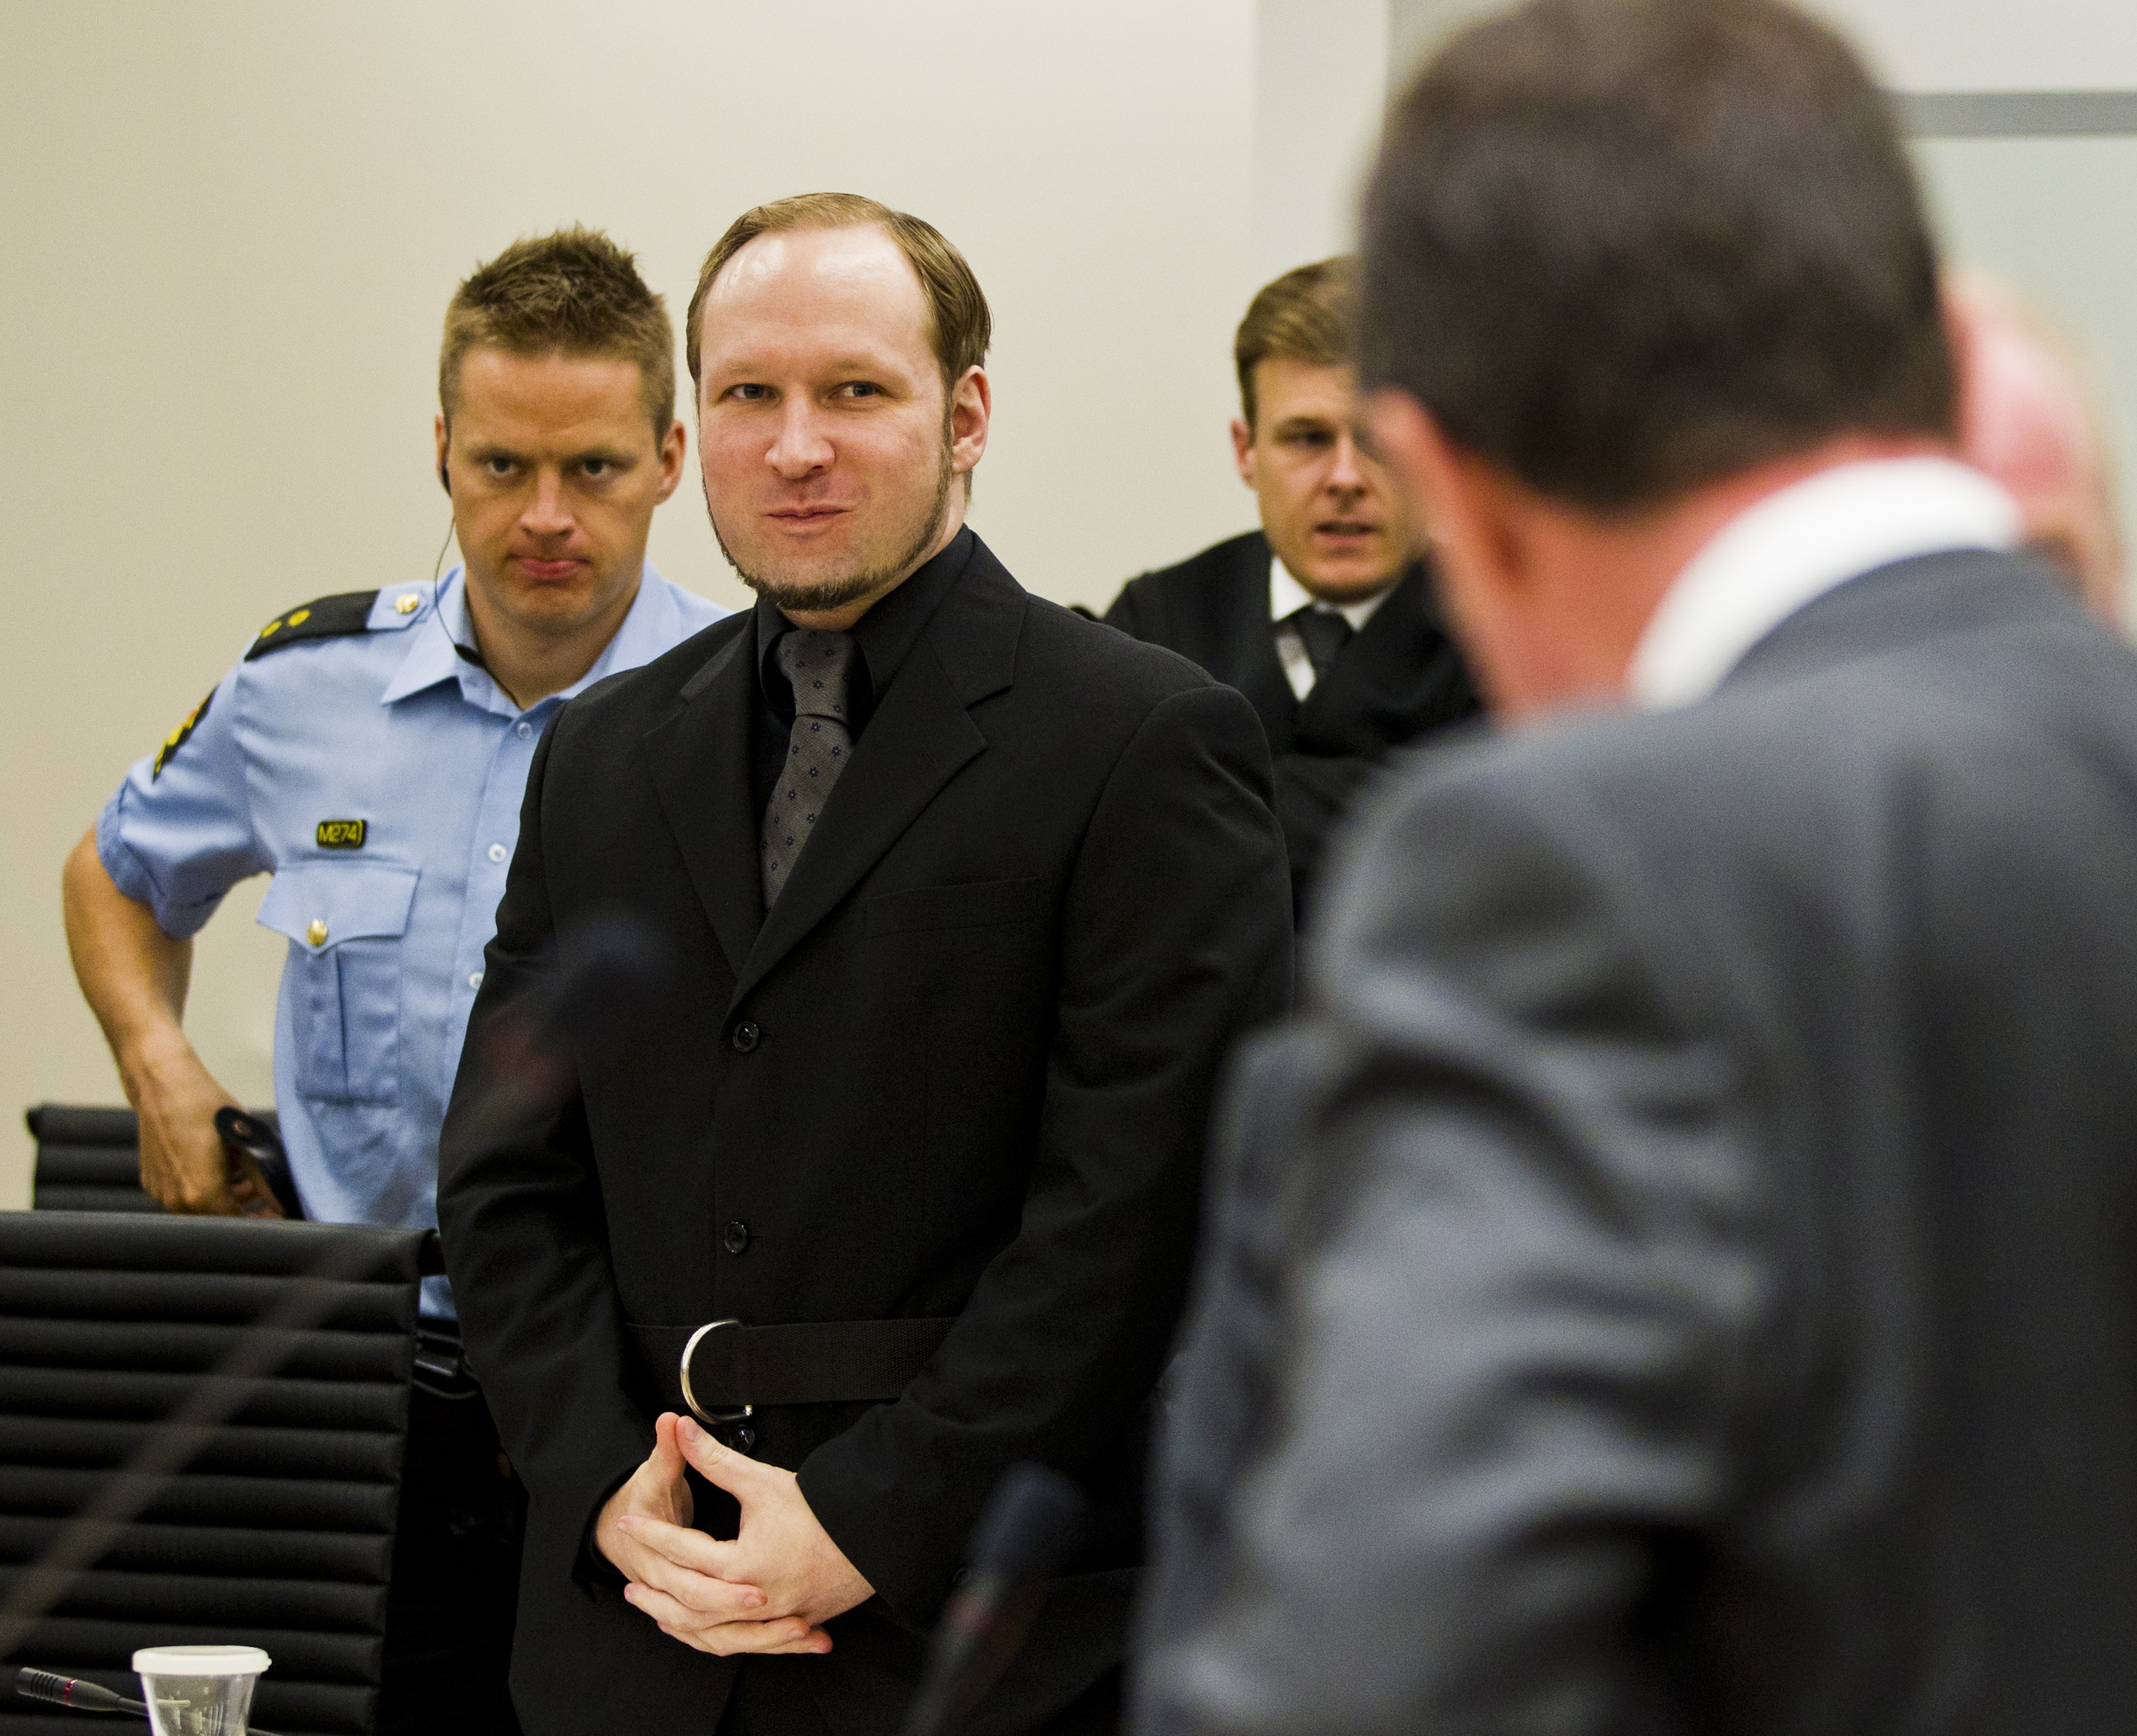 Åklagare, Oslo, Anders Behring Breivik, Rättegång, Massmördare, terrorist